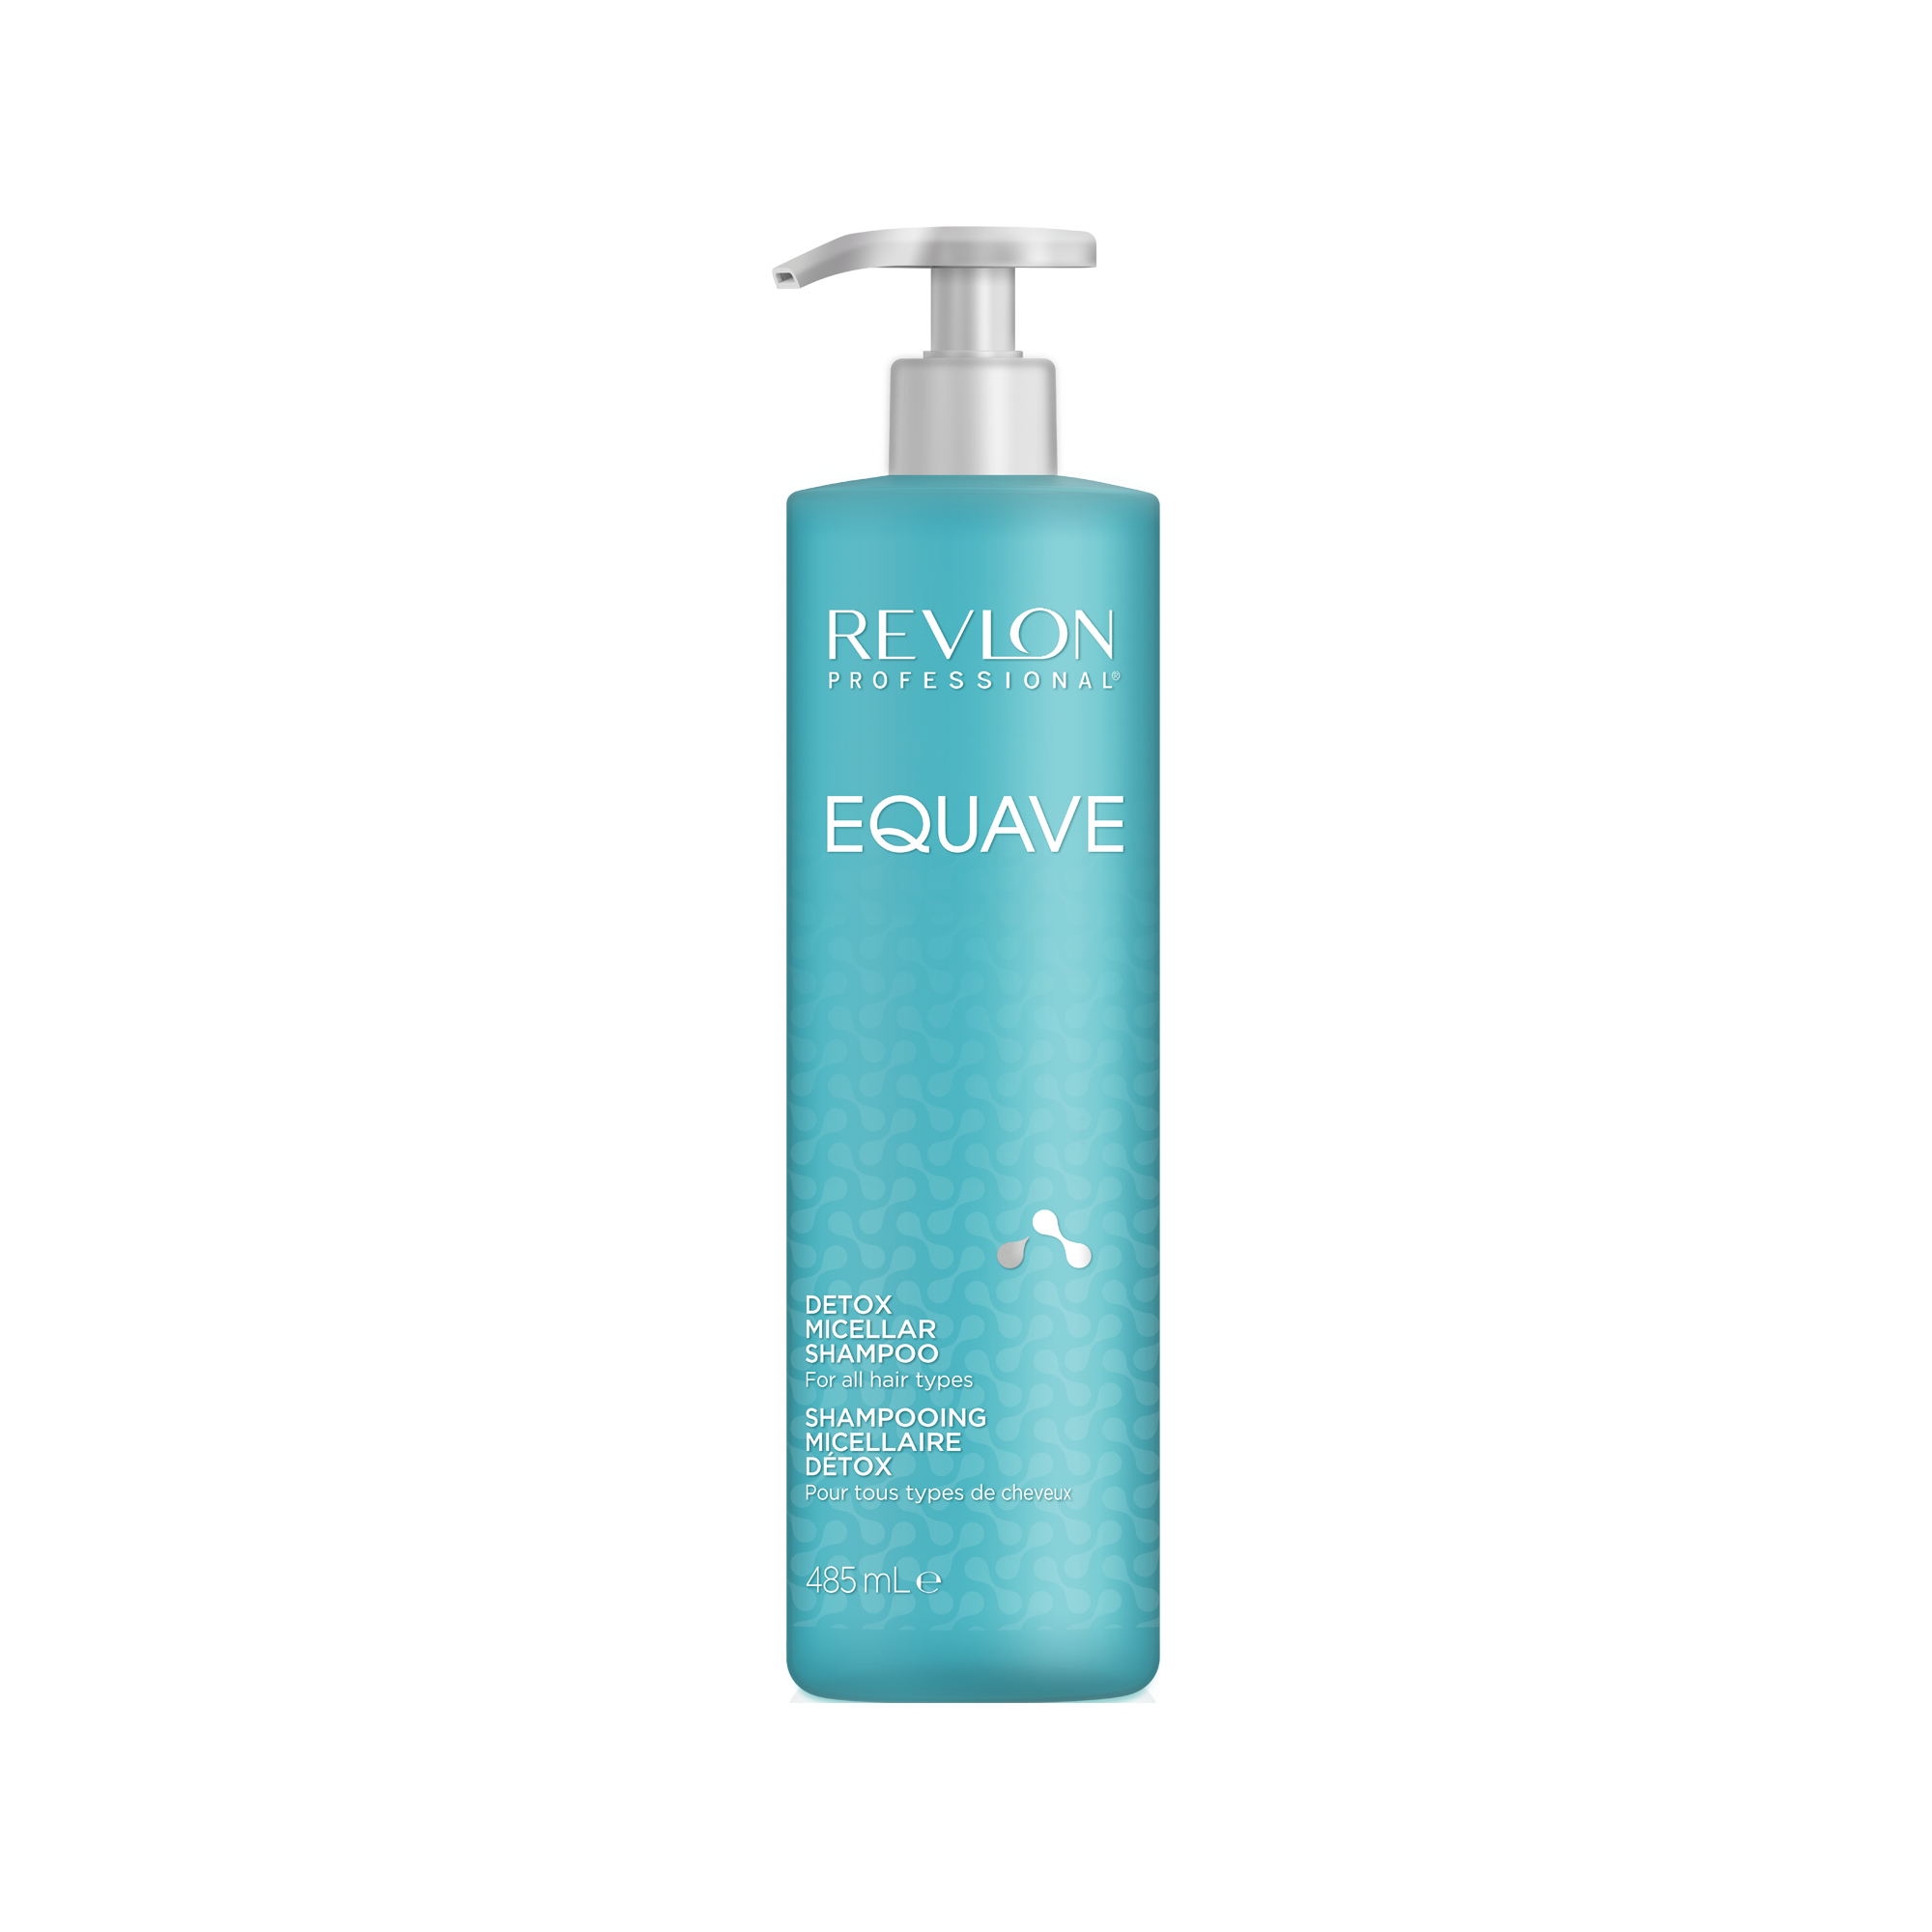 Revlon Equave Shampoo 485ml